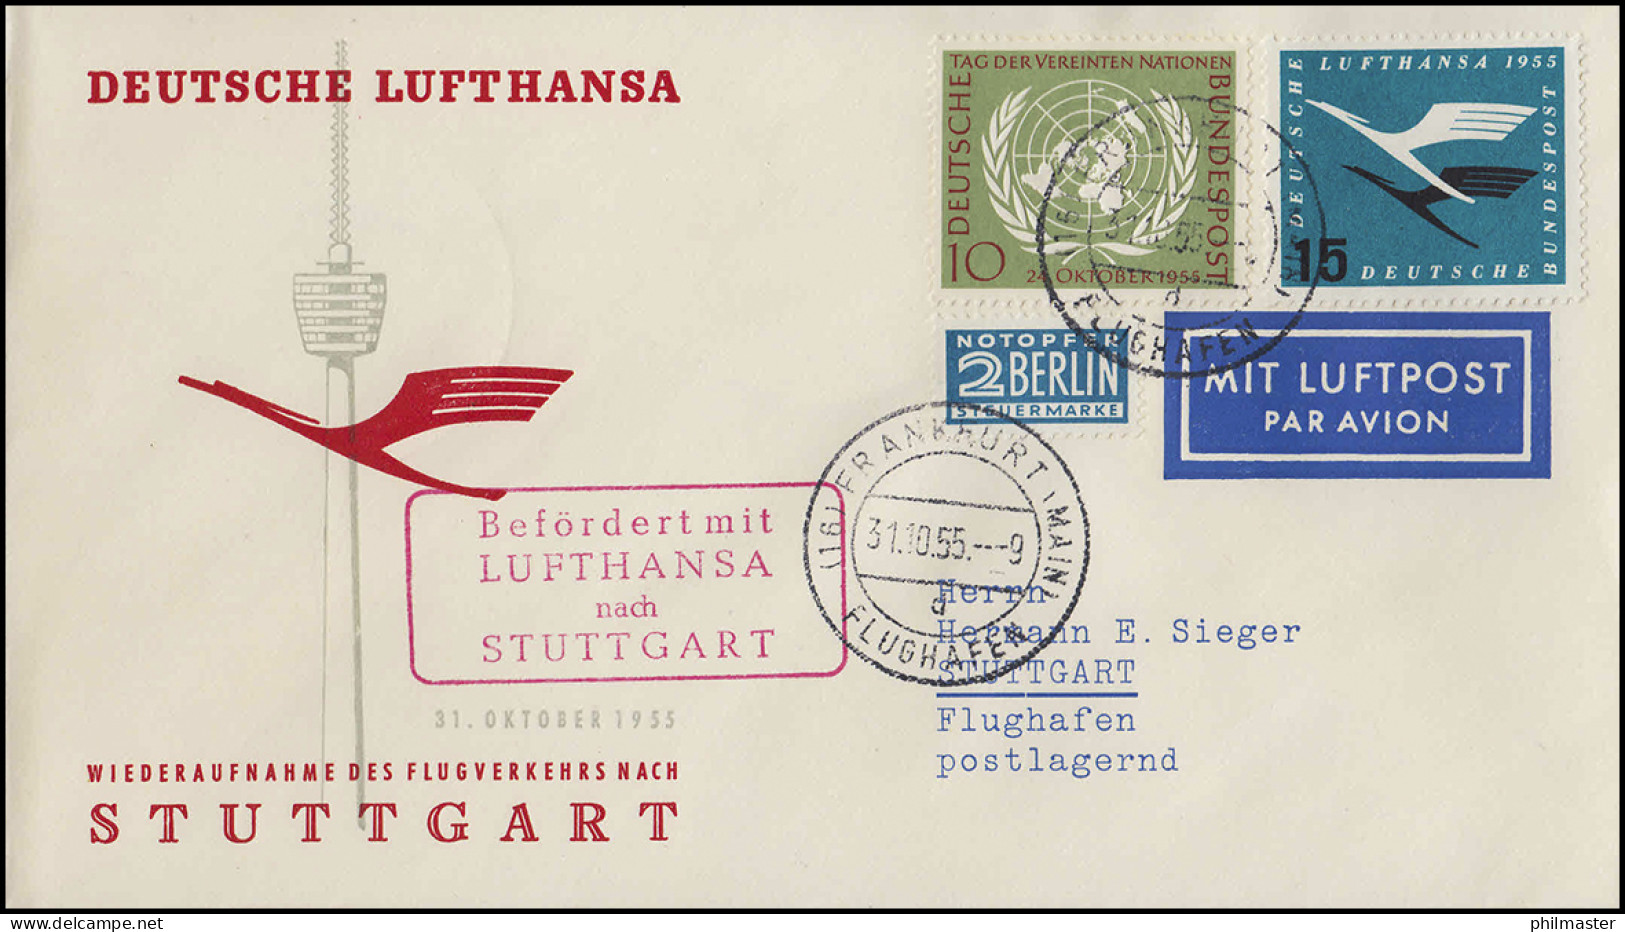 Luftpost Lufthansa Wiederaufnahme Inland, Frankfurt Main/ Stuttgart 31.10.1955 - First Flight Covers